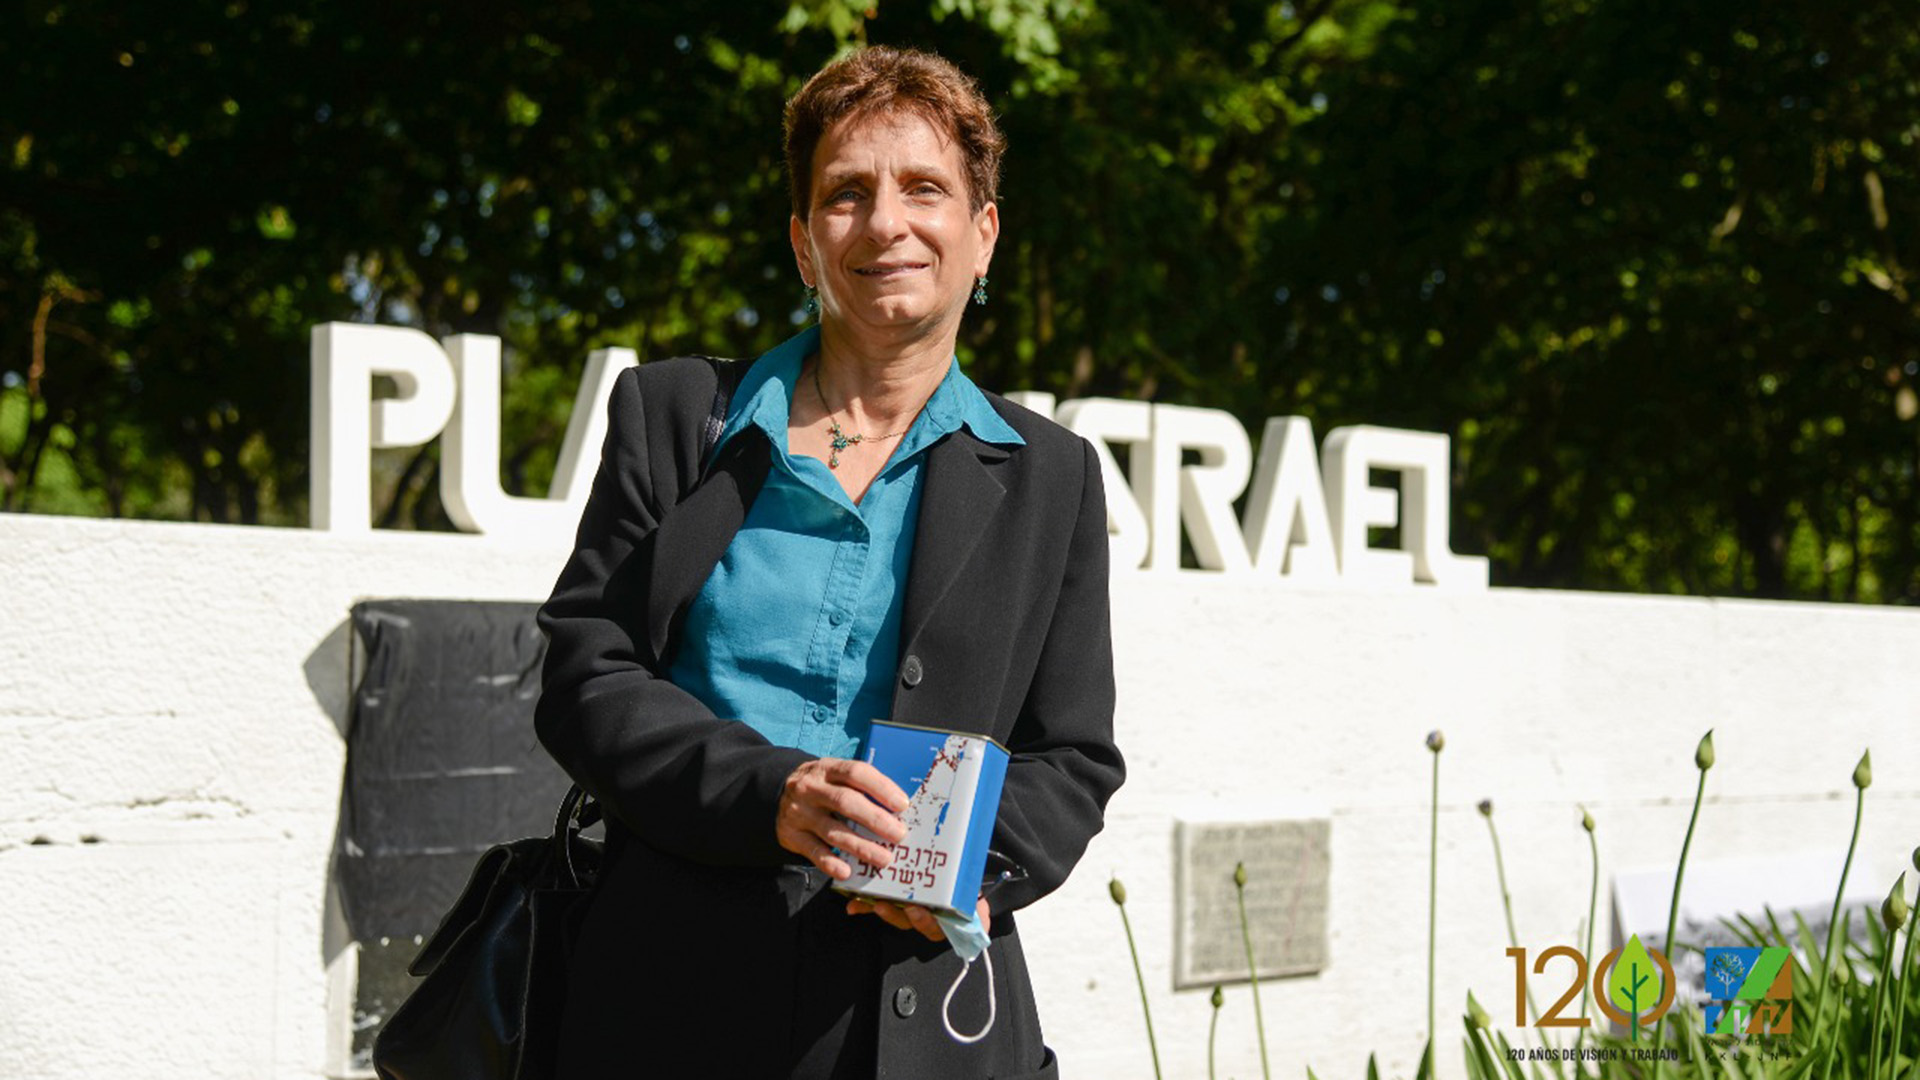 La embajadora israelí en Buenos Aires, Galit Ronen, cuestionó la votación de Argentina en el Consejo de Derechos Humanos de la Organización de Naciones Unidas (ONU).